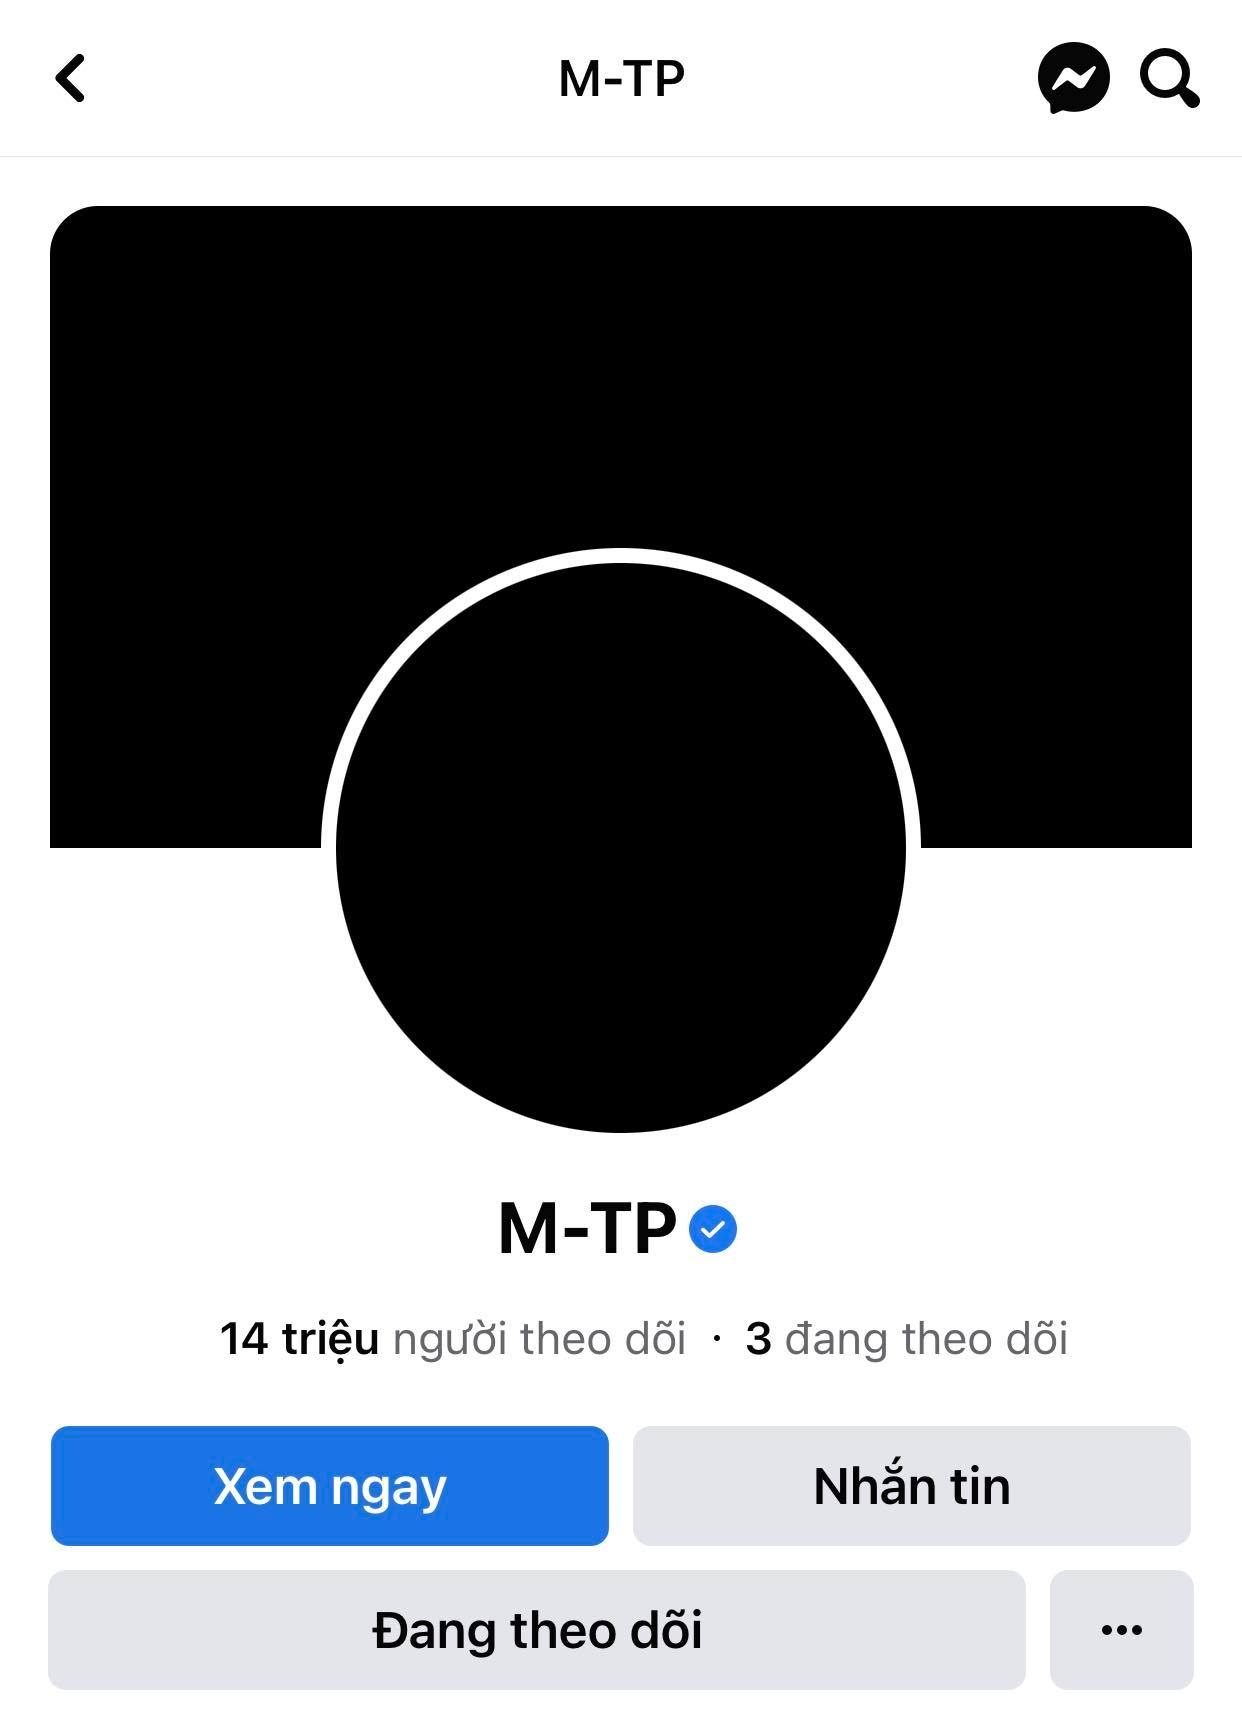 Sơn Tùng M-TP bất ngờ cập nhật avatar đen khiến fan hoang mang